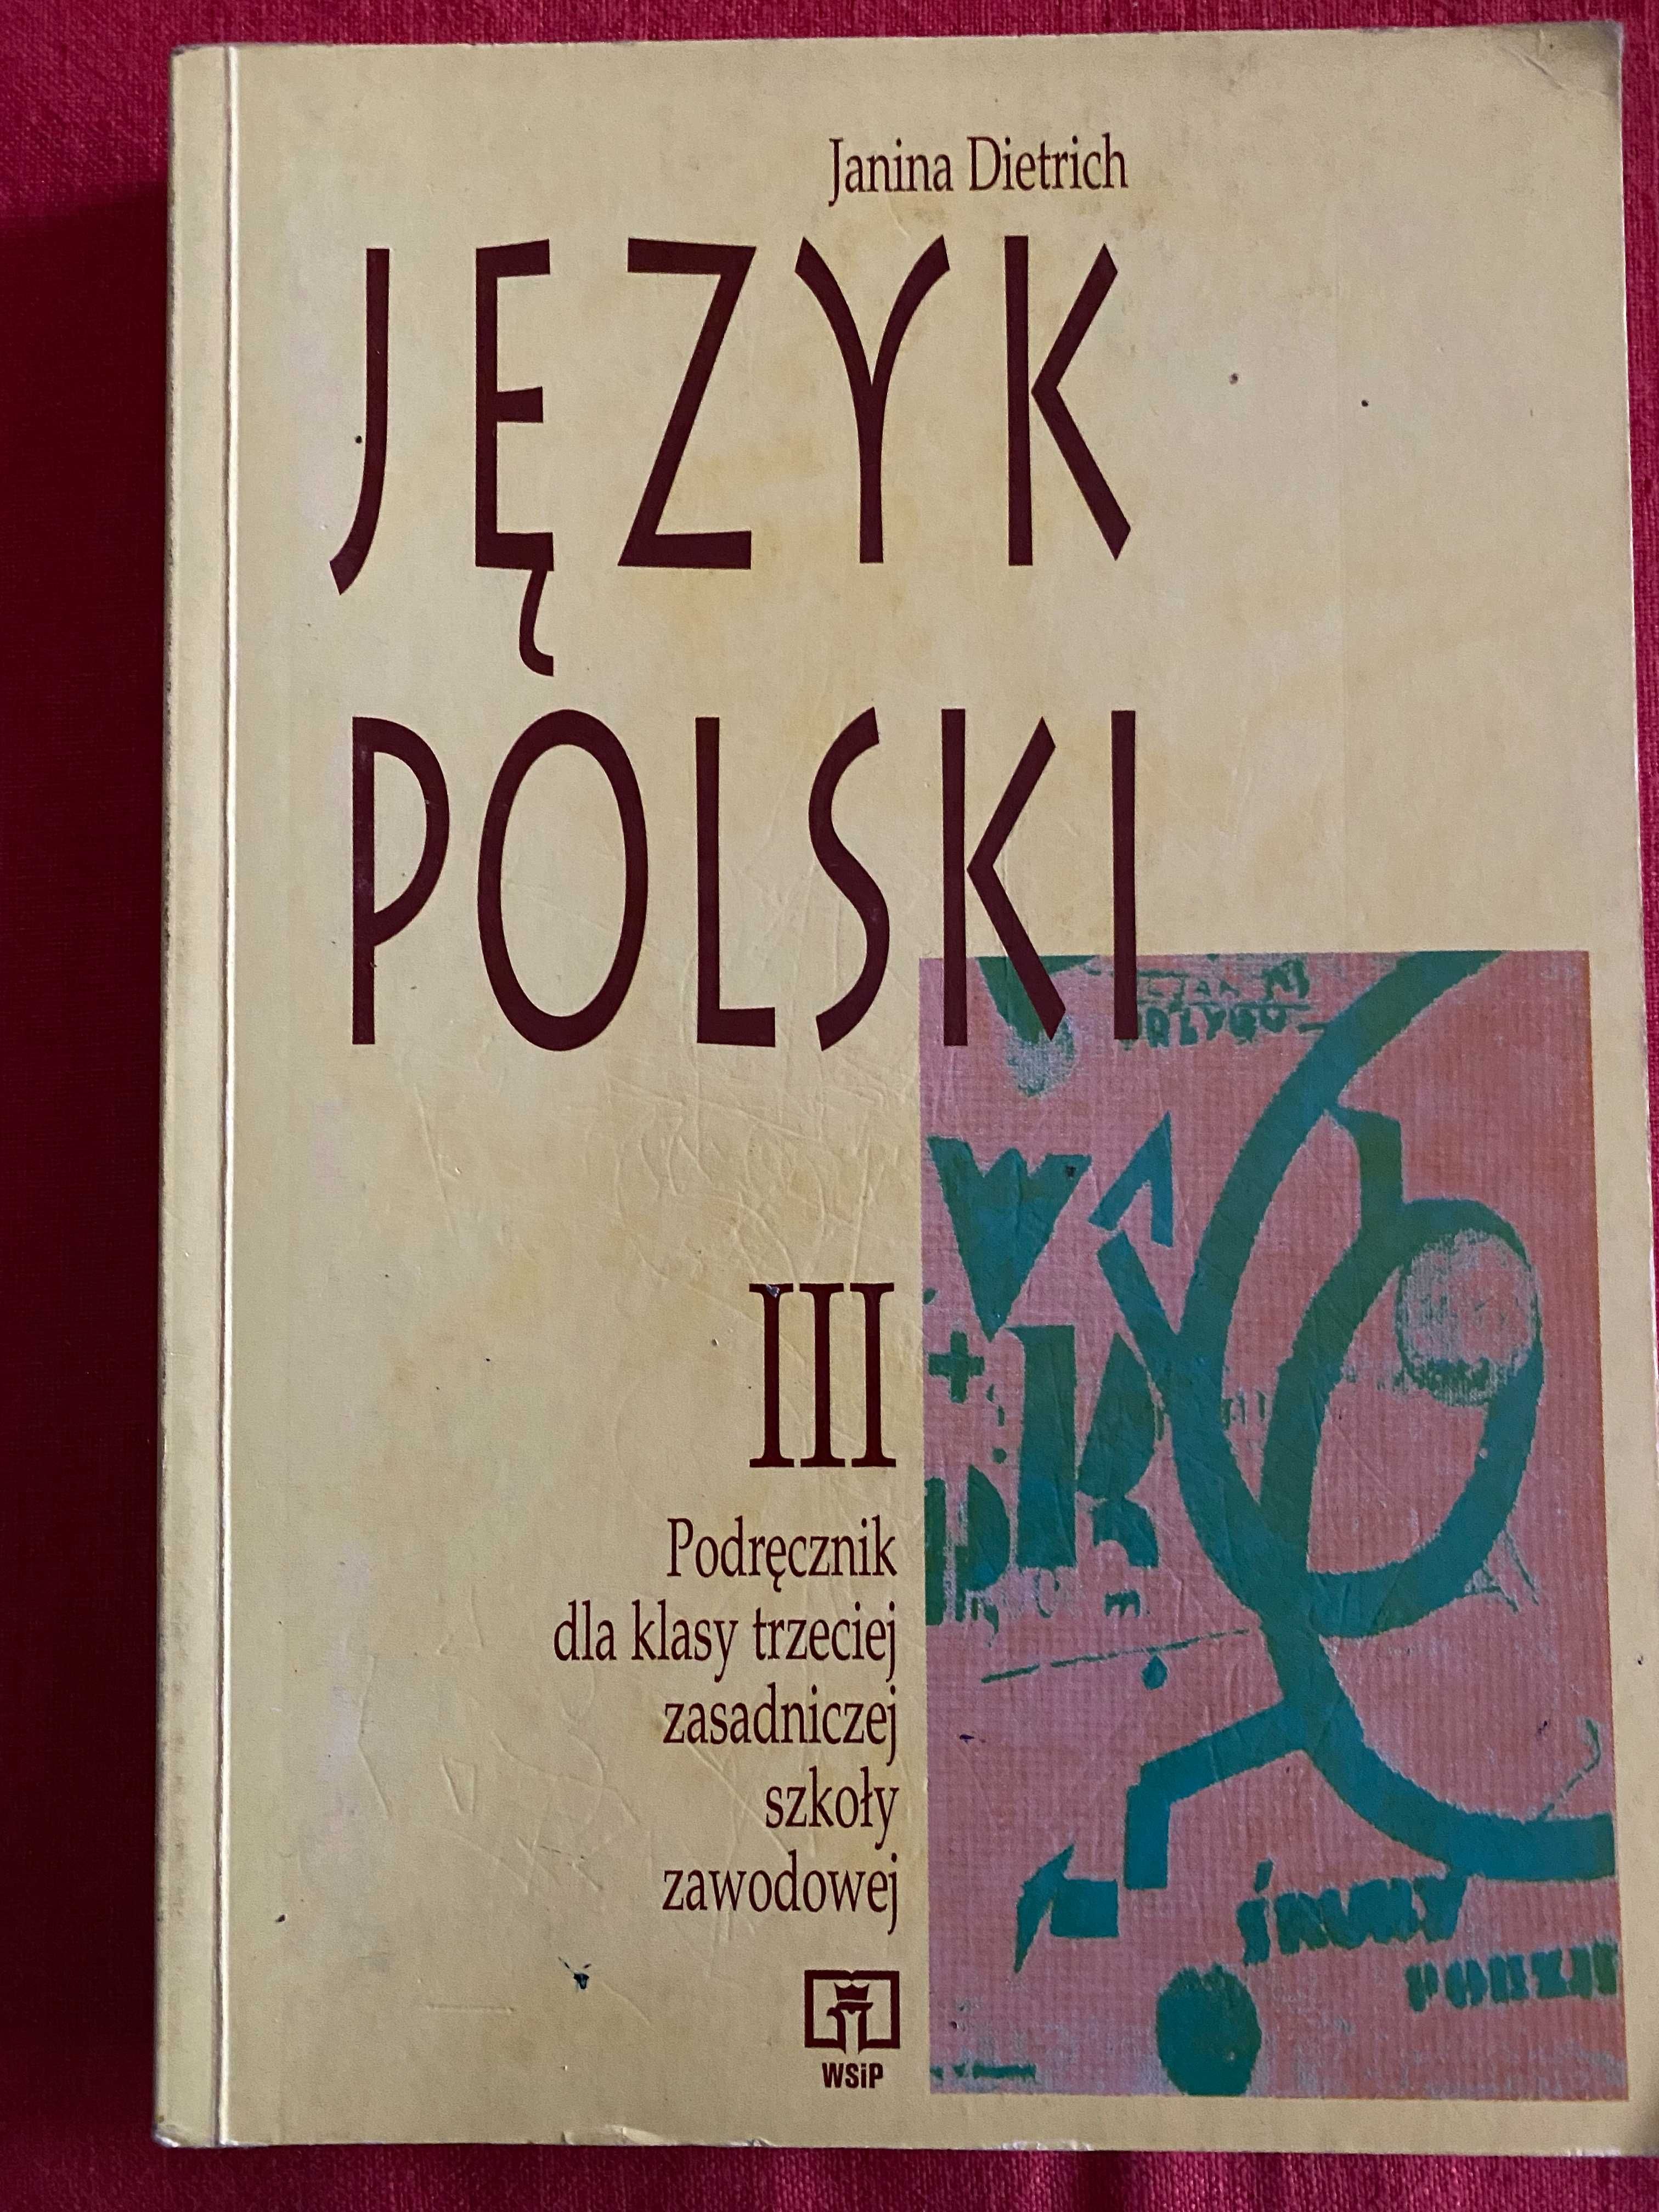 Jezyk polski 3-podrecznik dla klasy 3 zsz-J. Dietrich